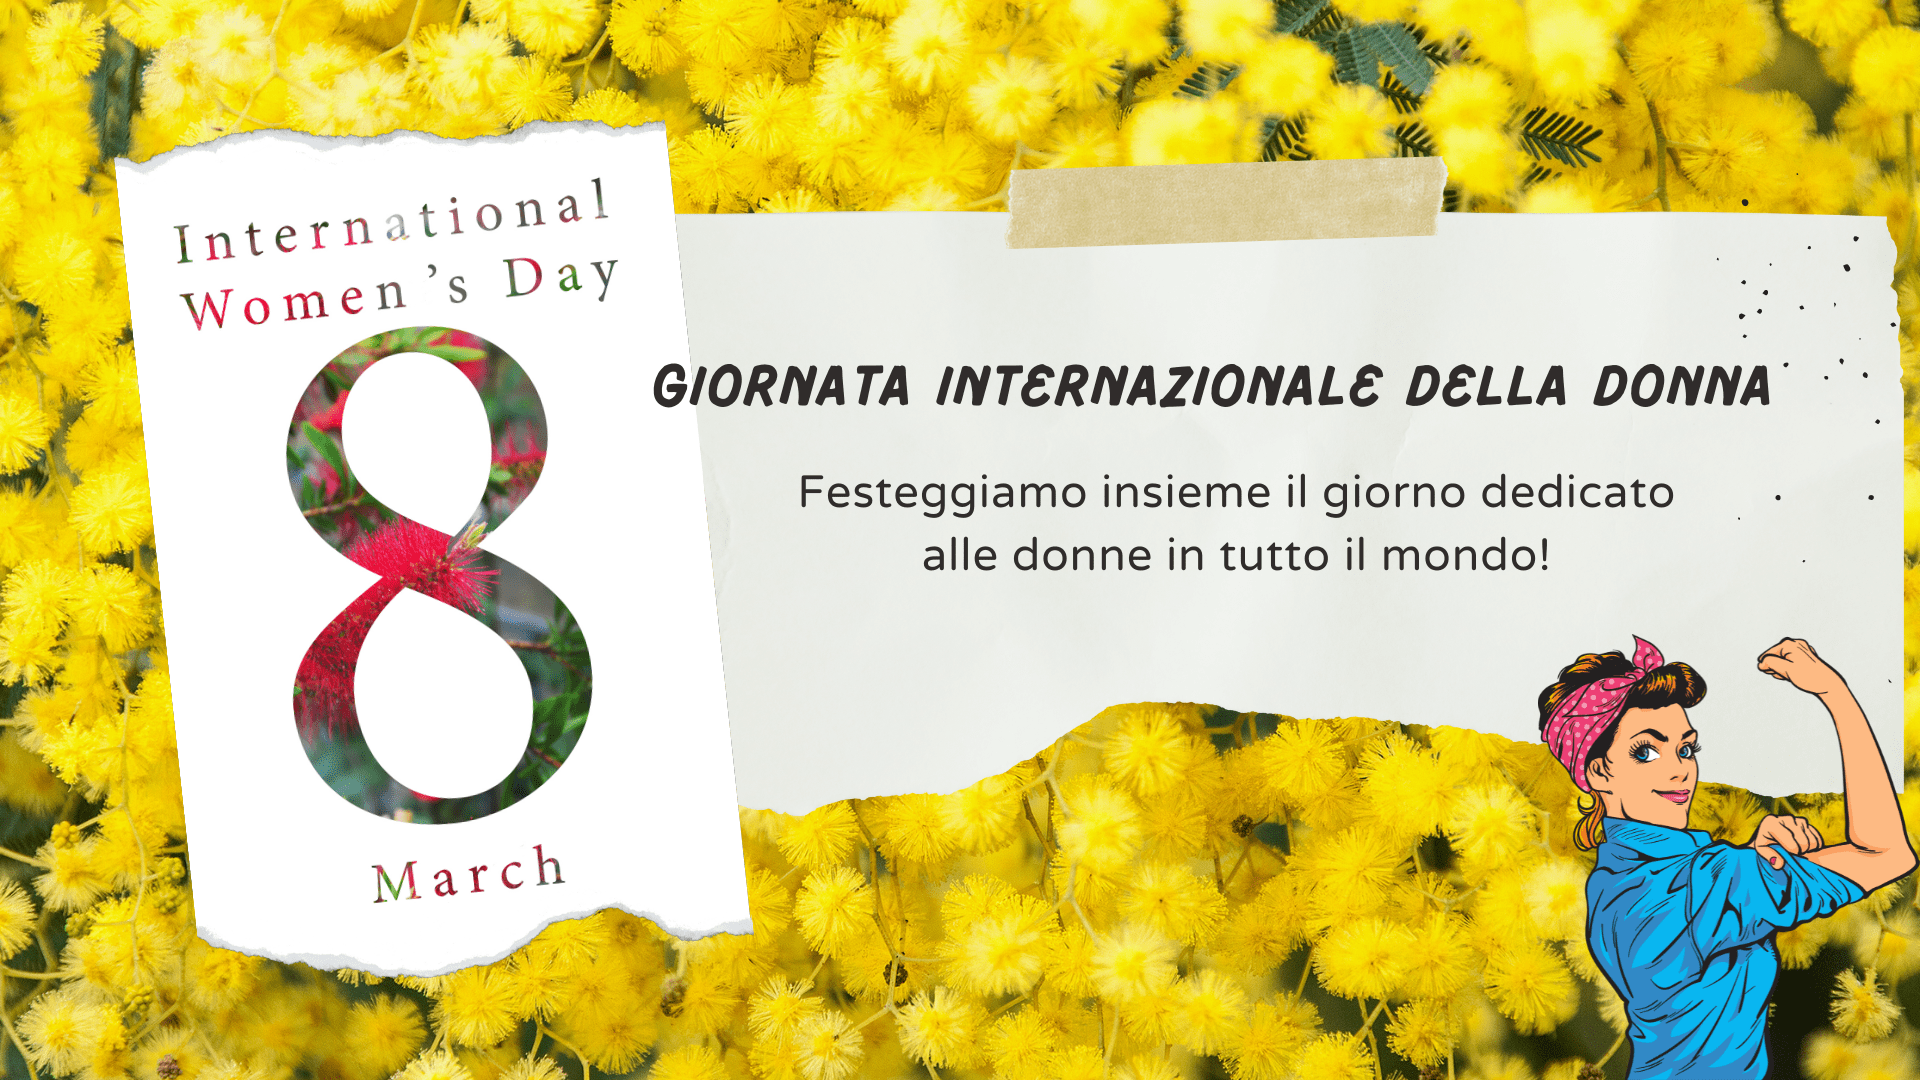 International Women's day offer to learn Italian